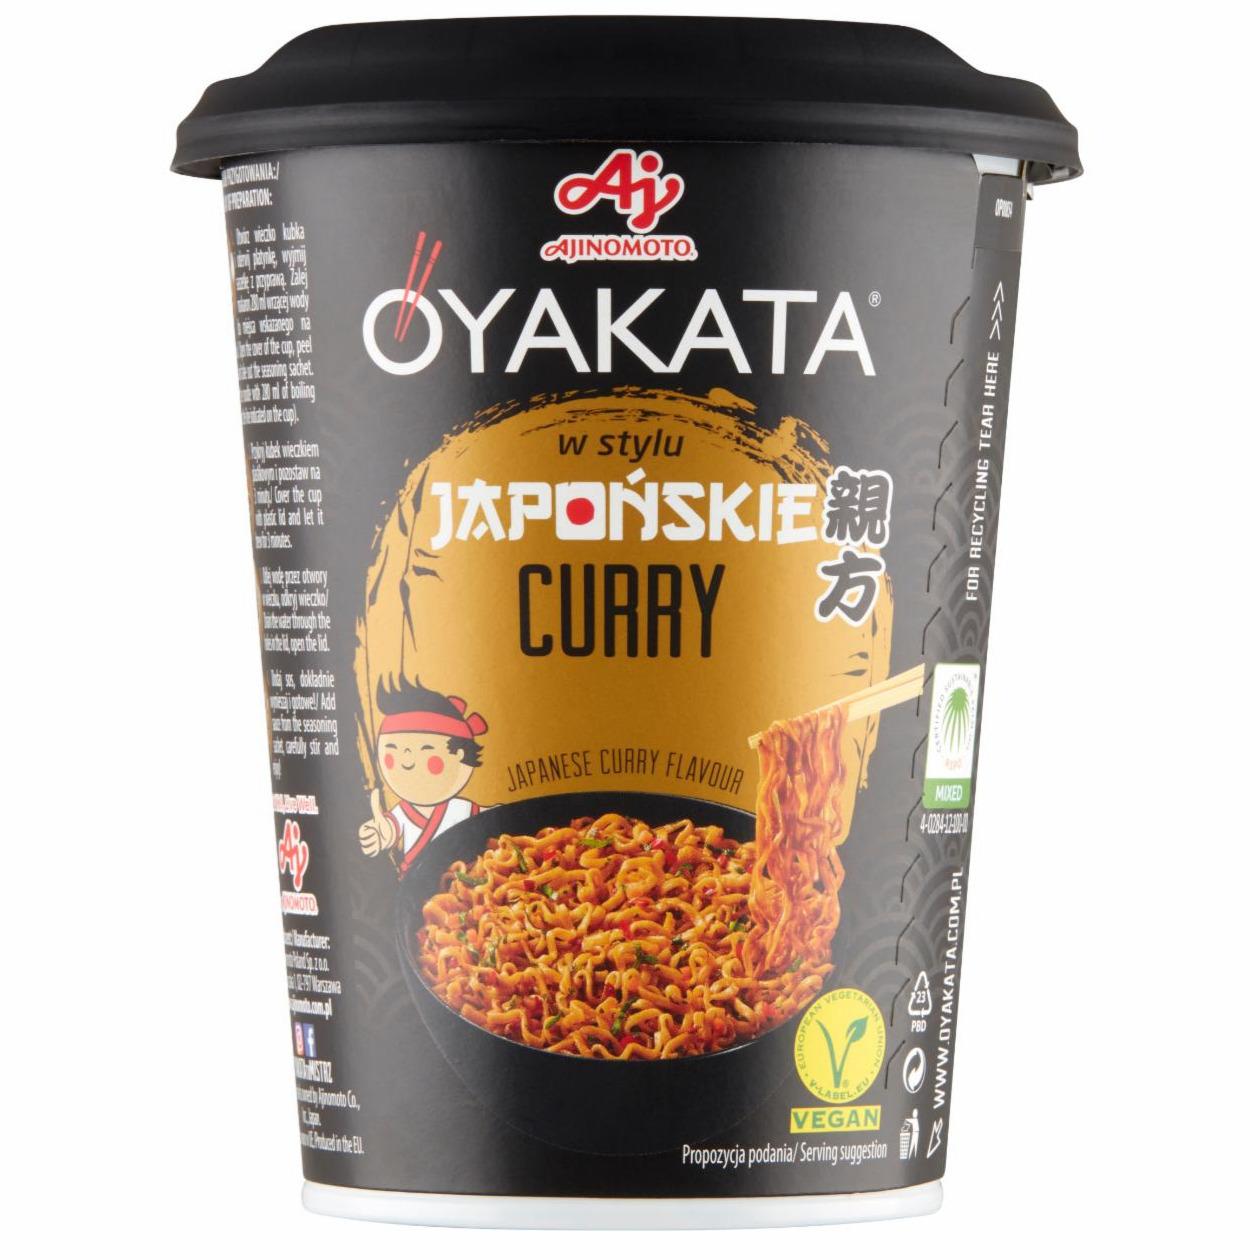 Zdjęcia - OYAKATA Danie instant z sosem w stylu japońskie curry 90 g